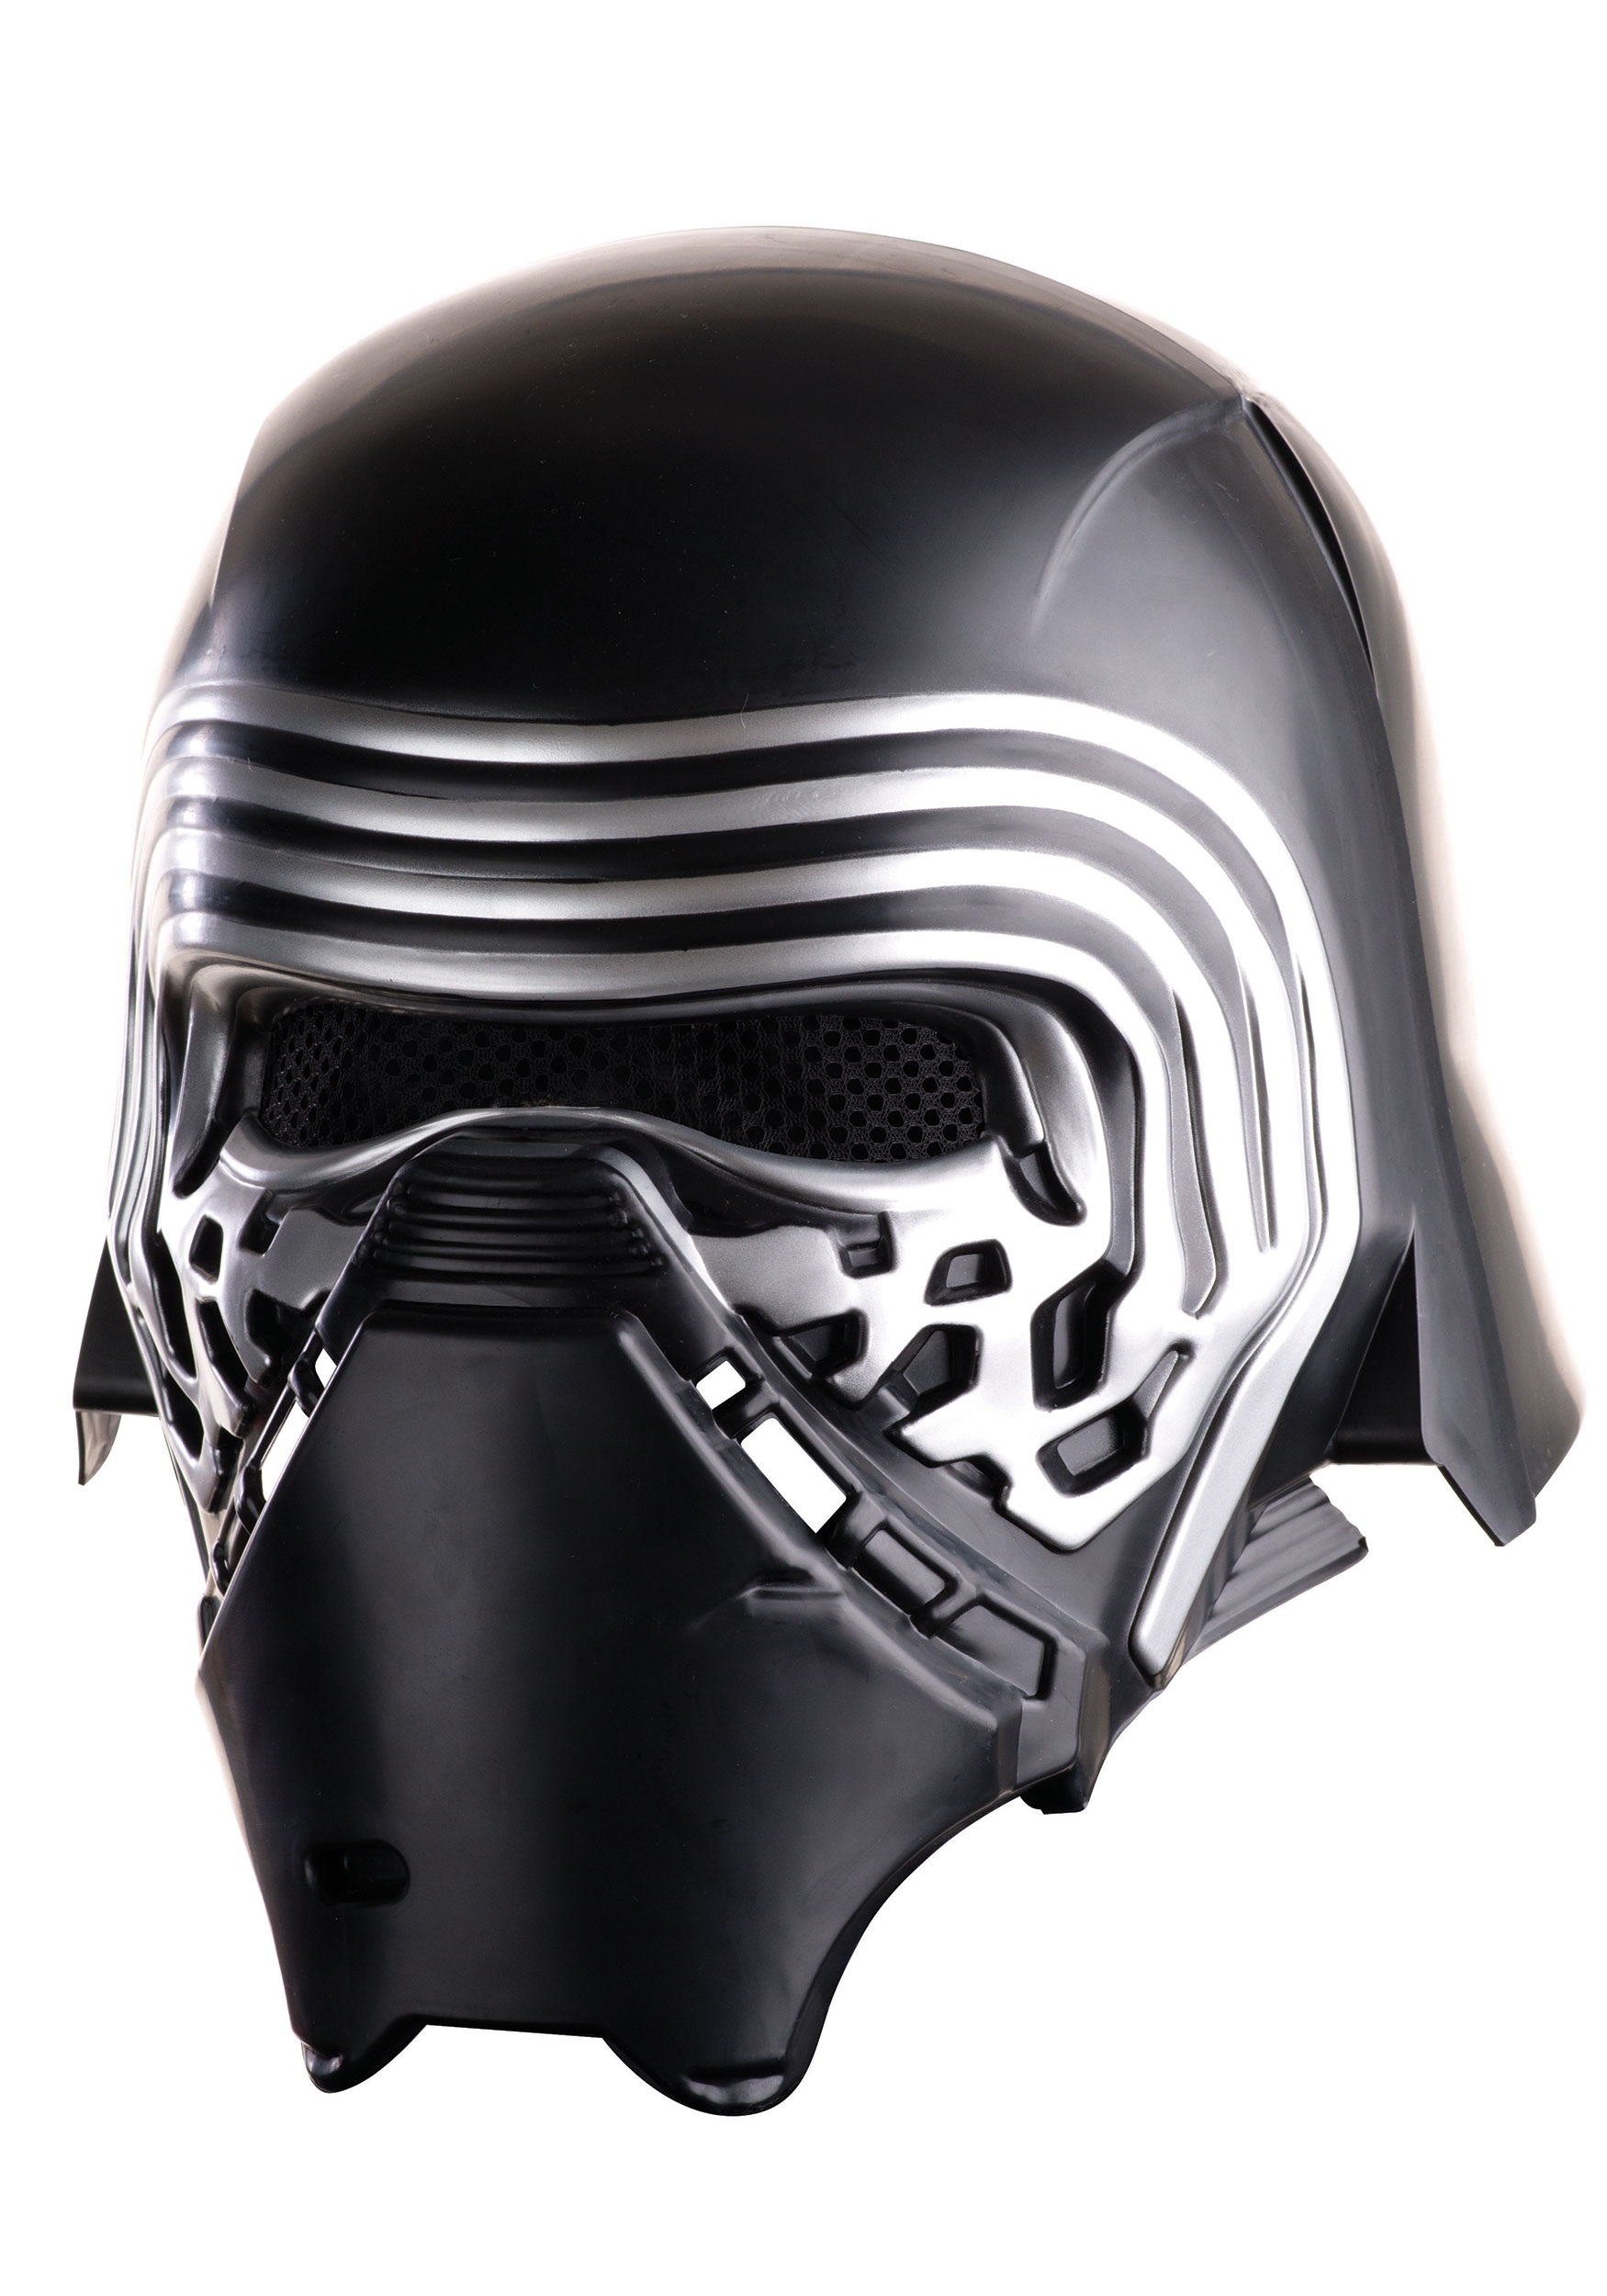 Child Star Wars The Force Awakens Deluxe Kylo Ren Helmet